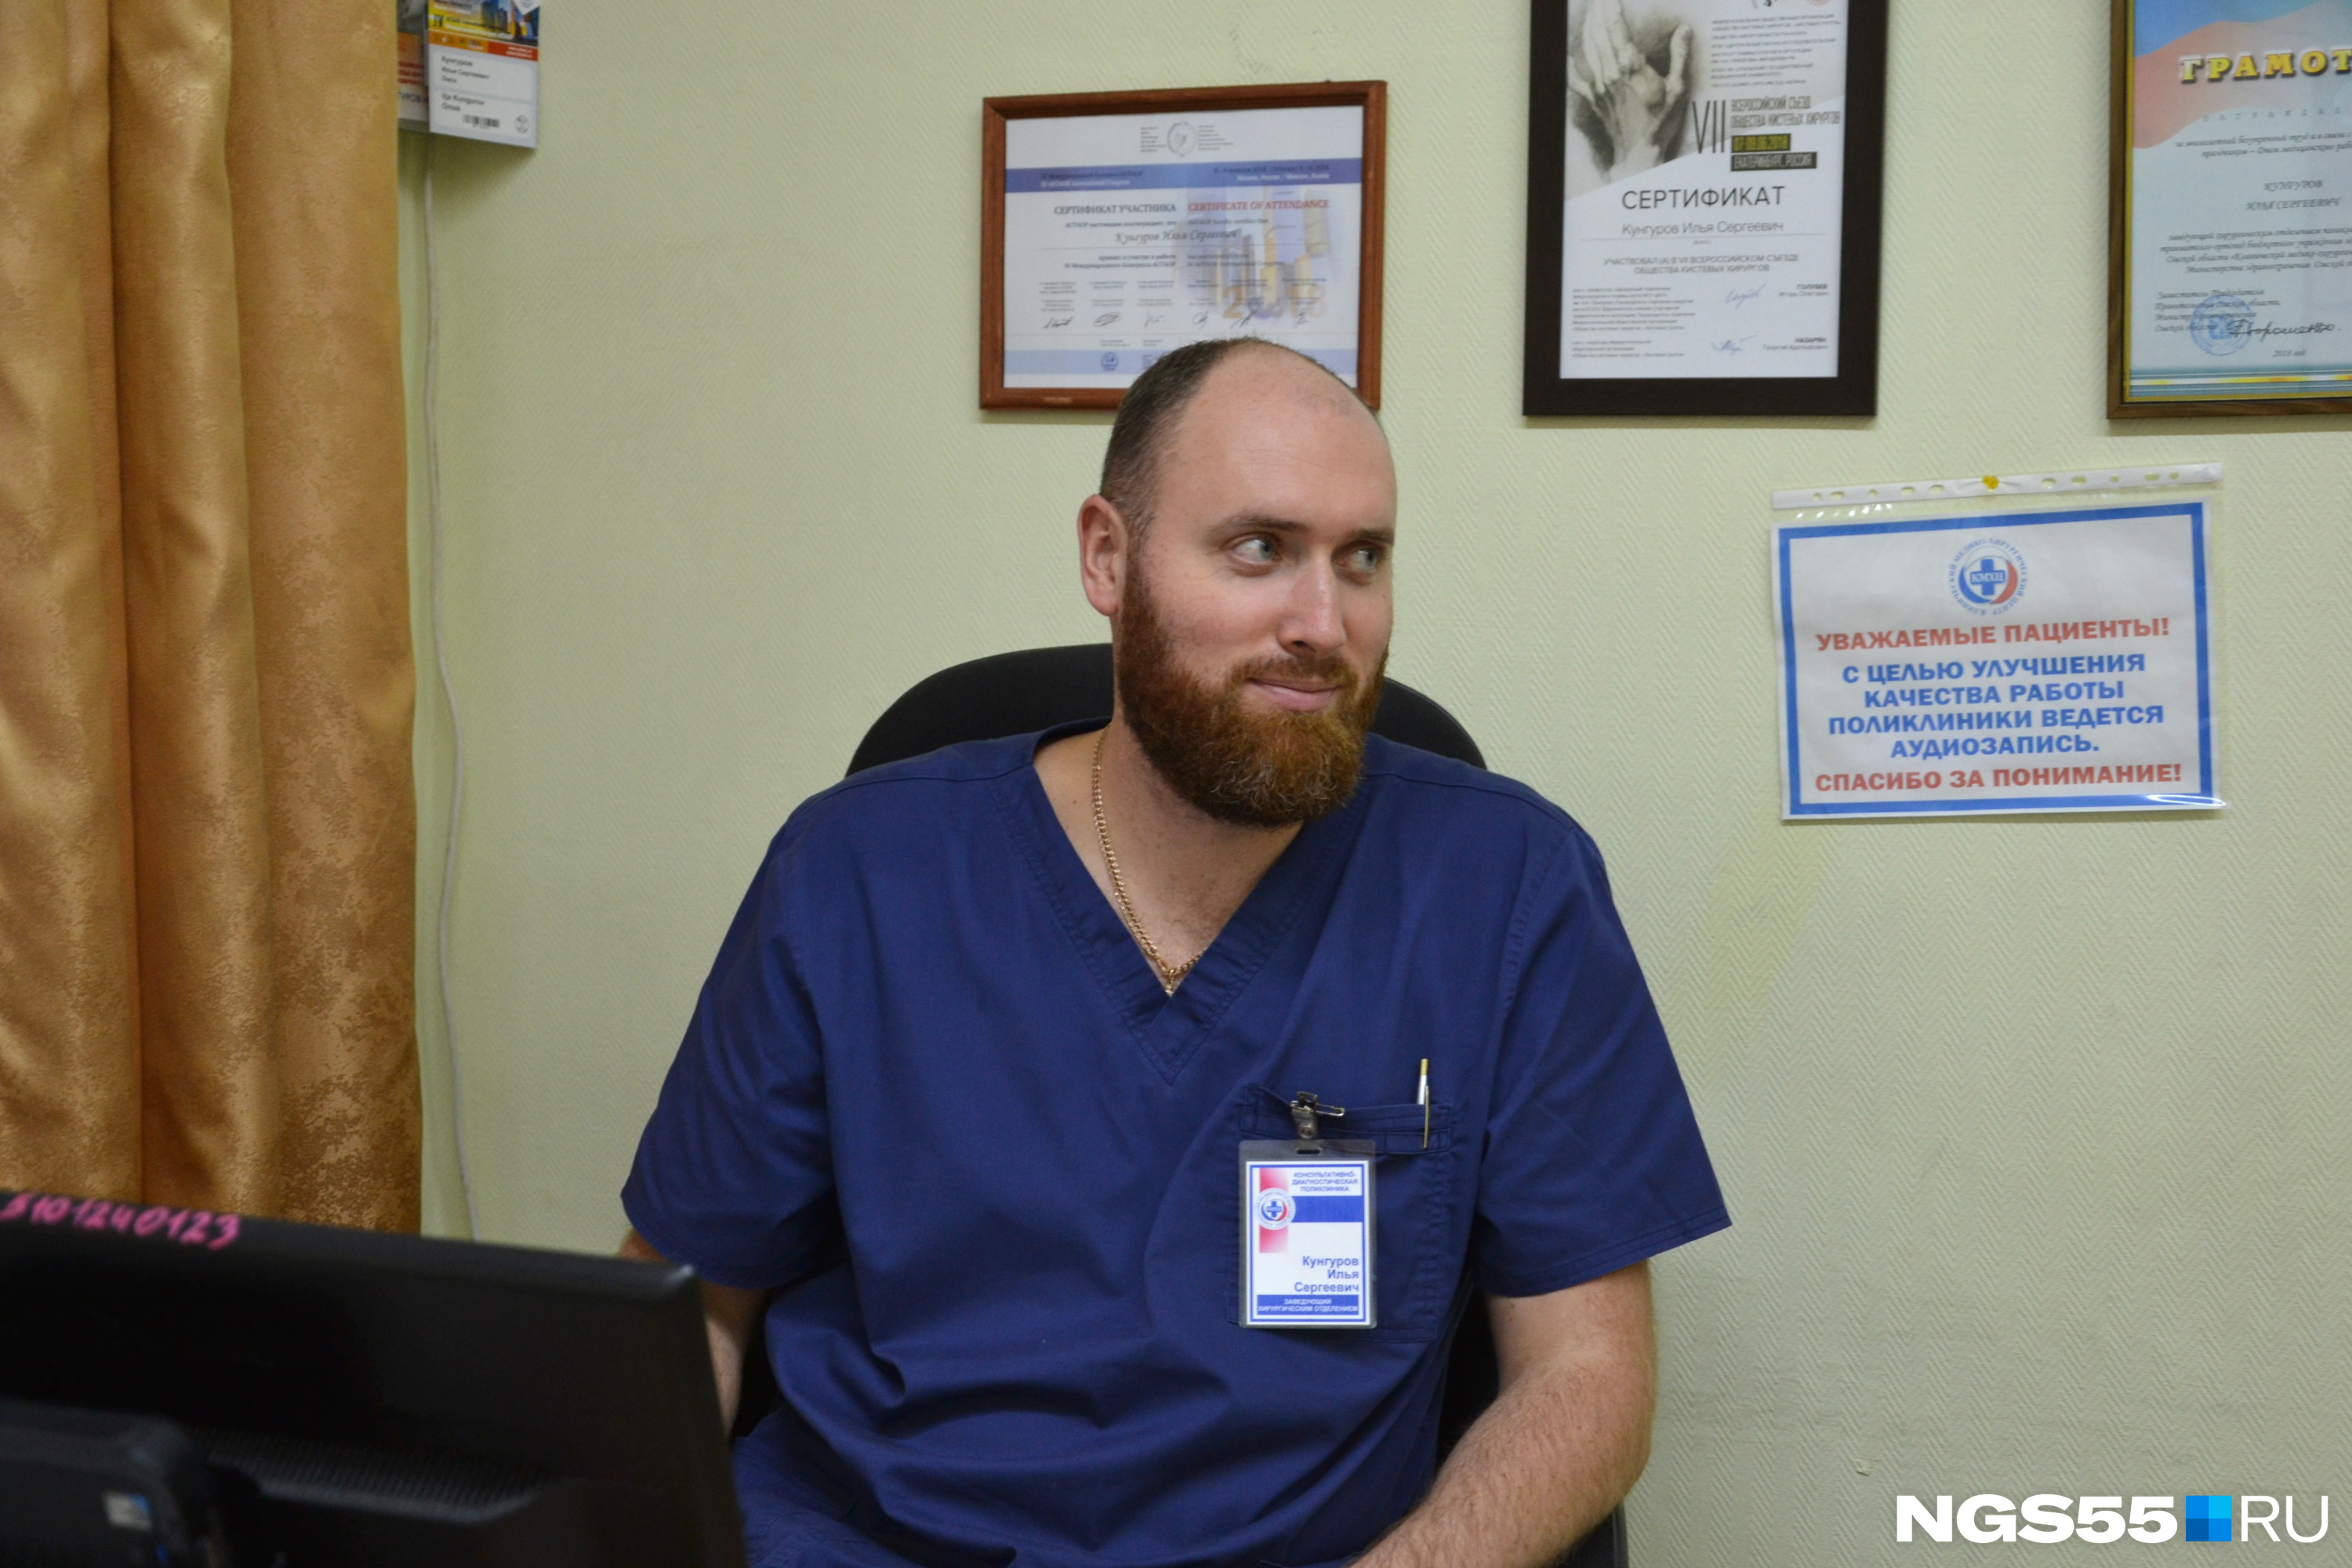 Самая длинная операция, которую проводил Илья Кунгуров, длилась около четырех часов. Но он очень хочет делать и более масштабные операции